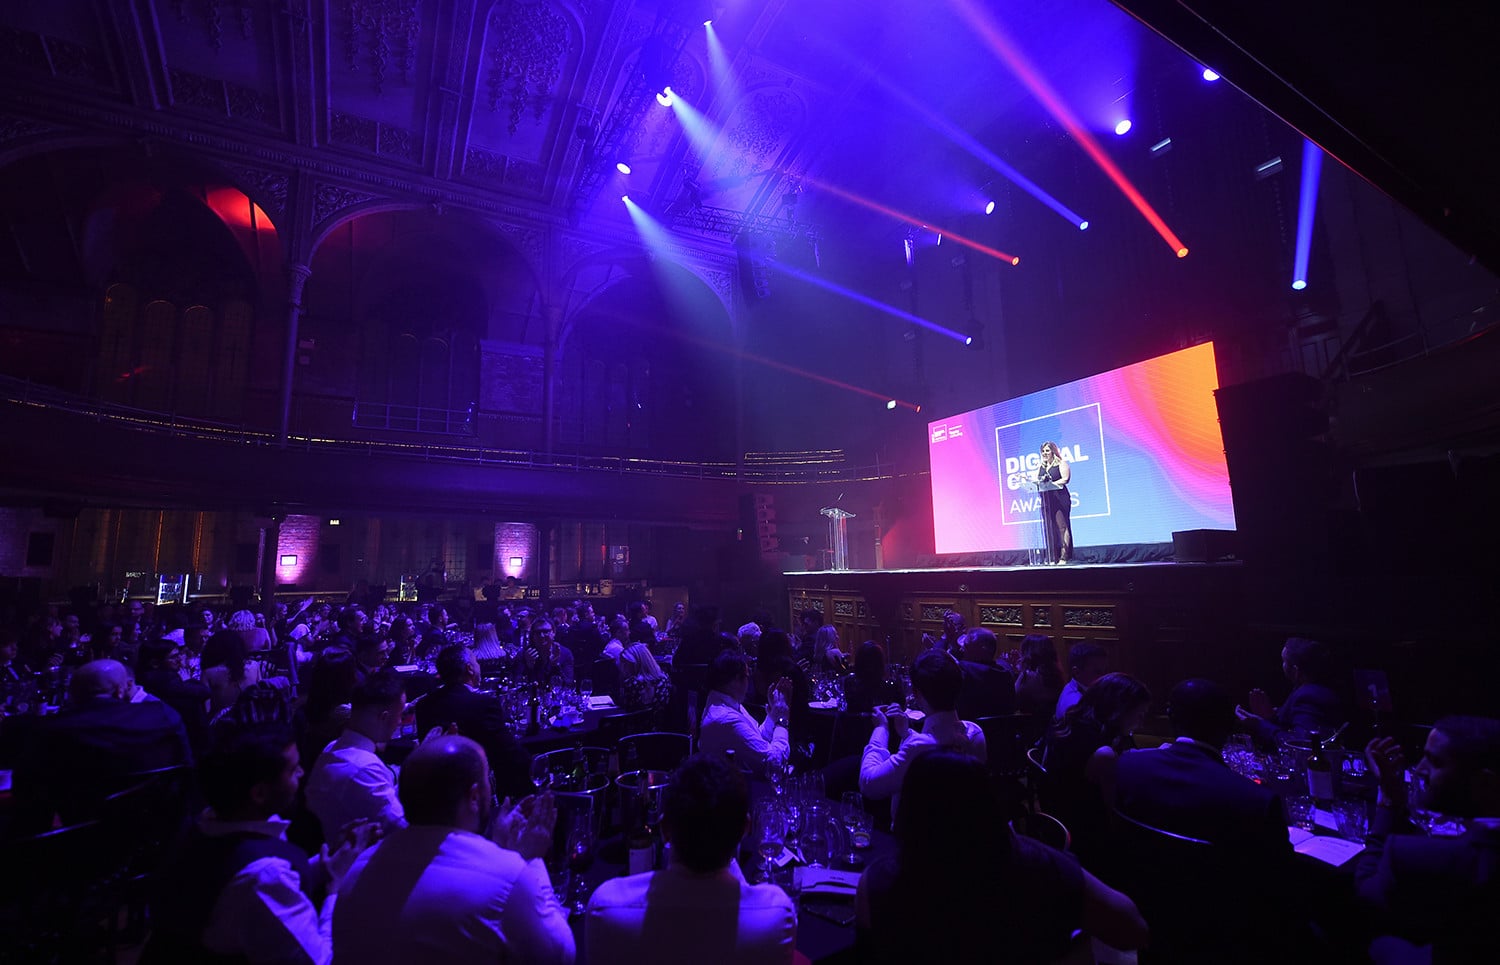 Digital City Awards at Albert Hall